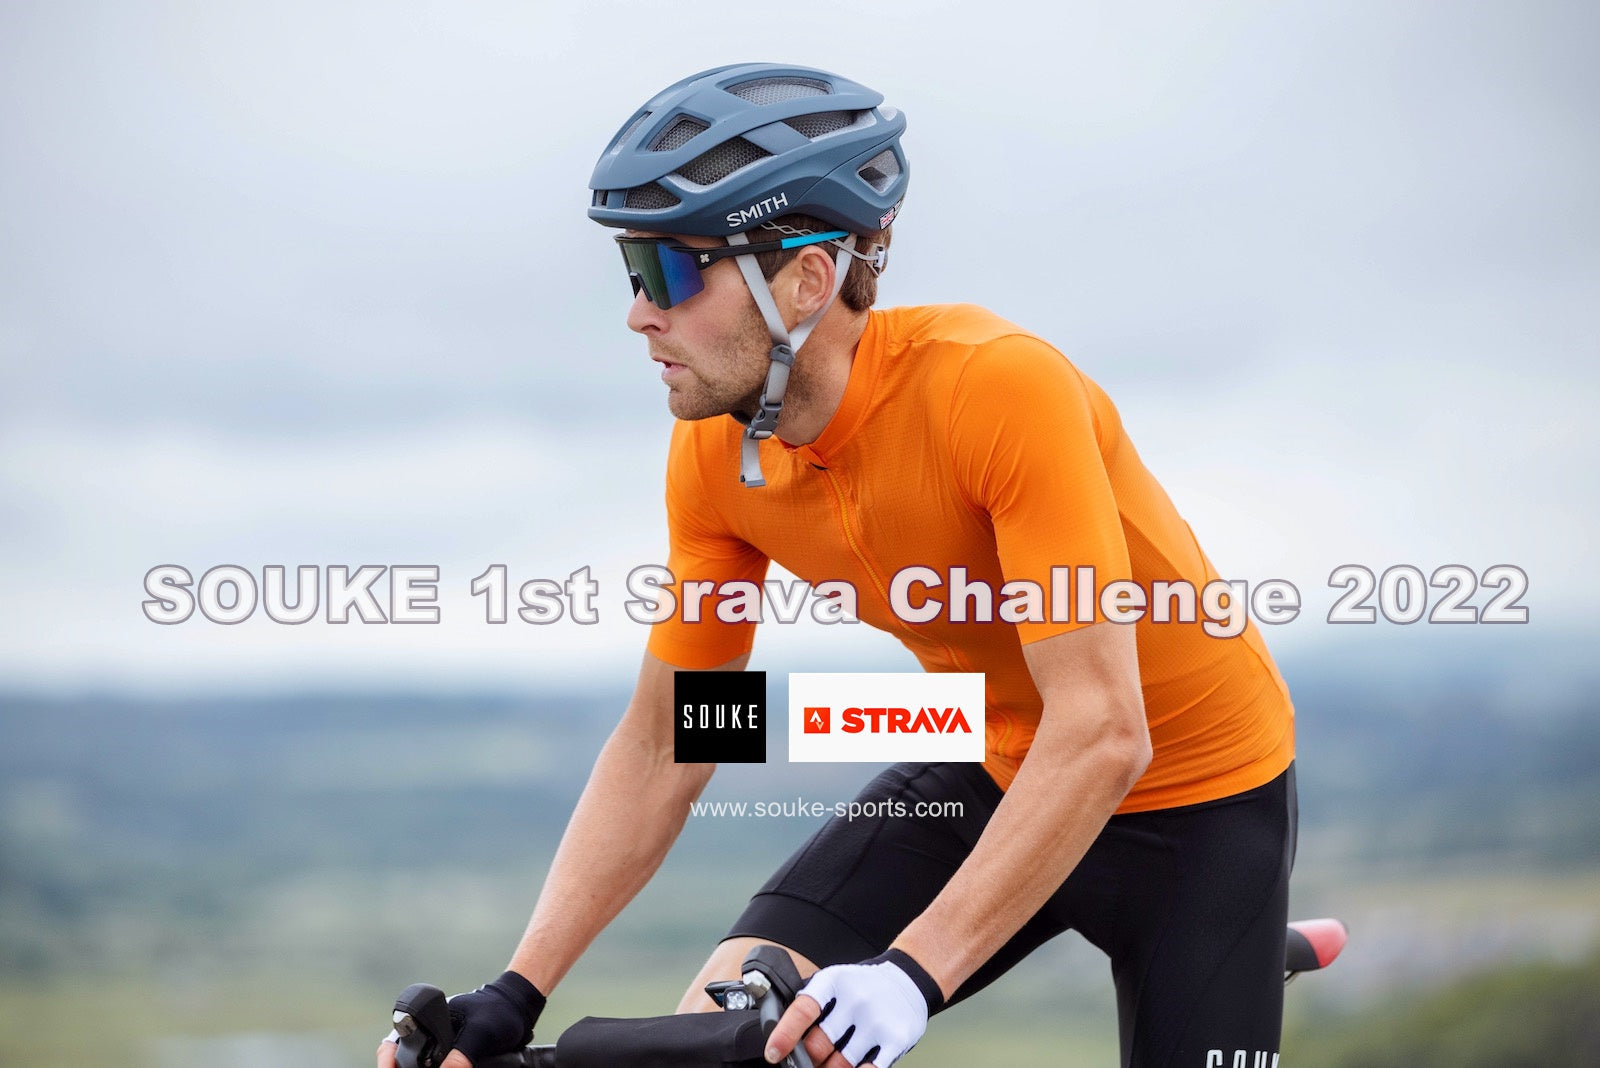 SOUKE 1st Strava Challenge Invitation 2022-Souke Sports